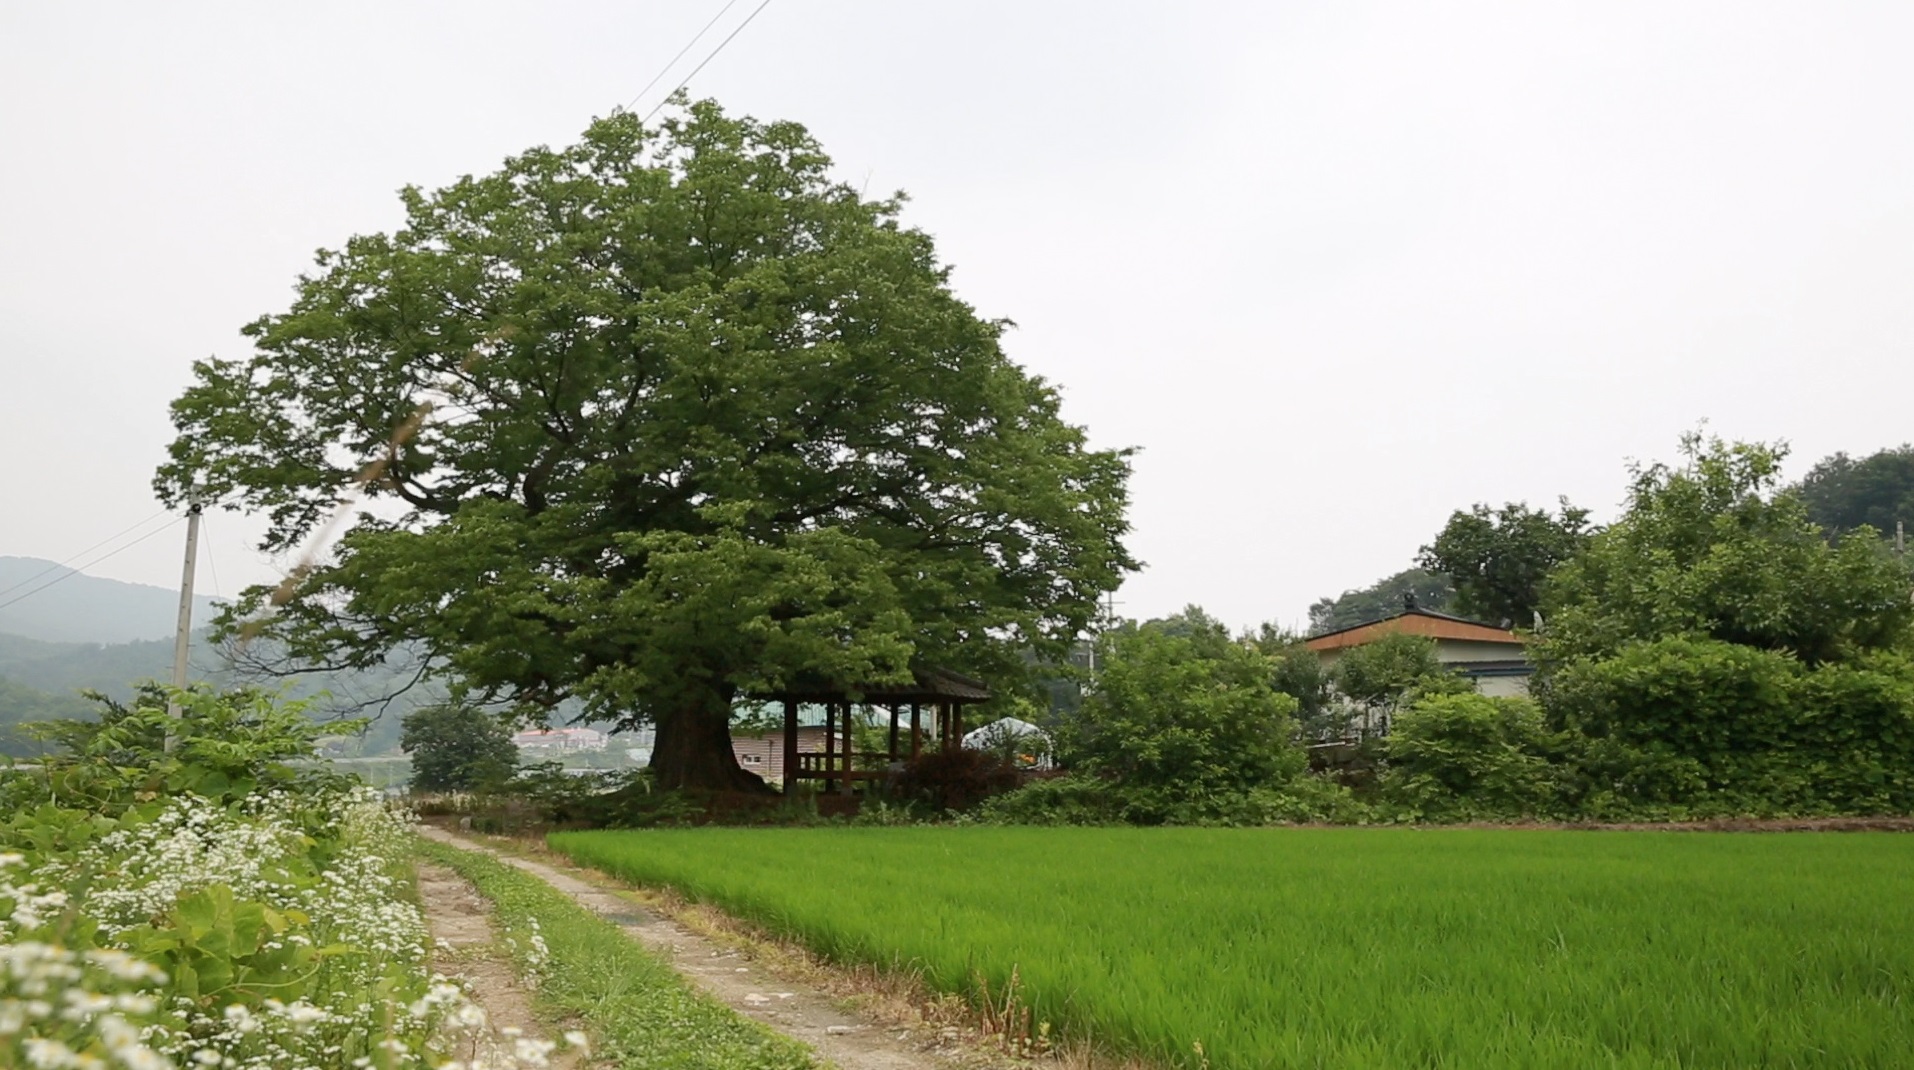 할머니의 고향은 충북 음성군 하루동골, 수백 년 세월을 이긴 덩치 큰 버드나무가 장승처럼 마을을 지키고 서 있는 시골 마을이다. 